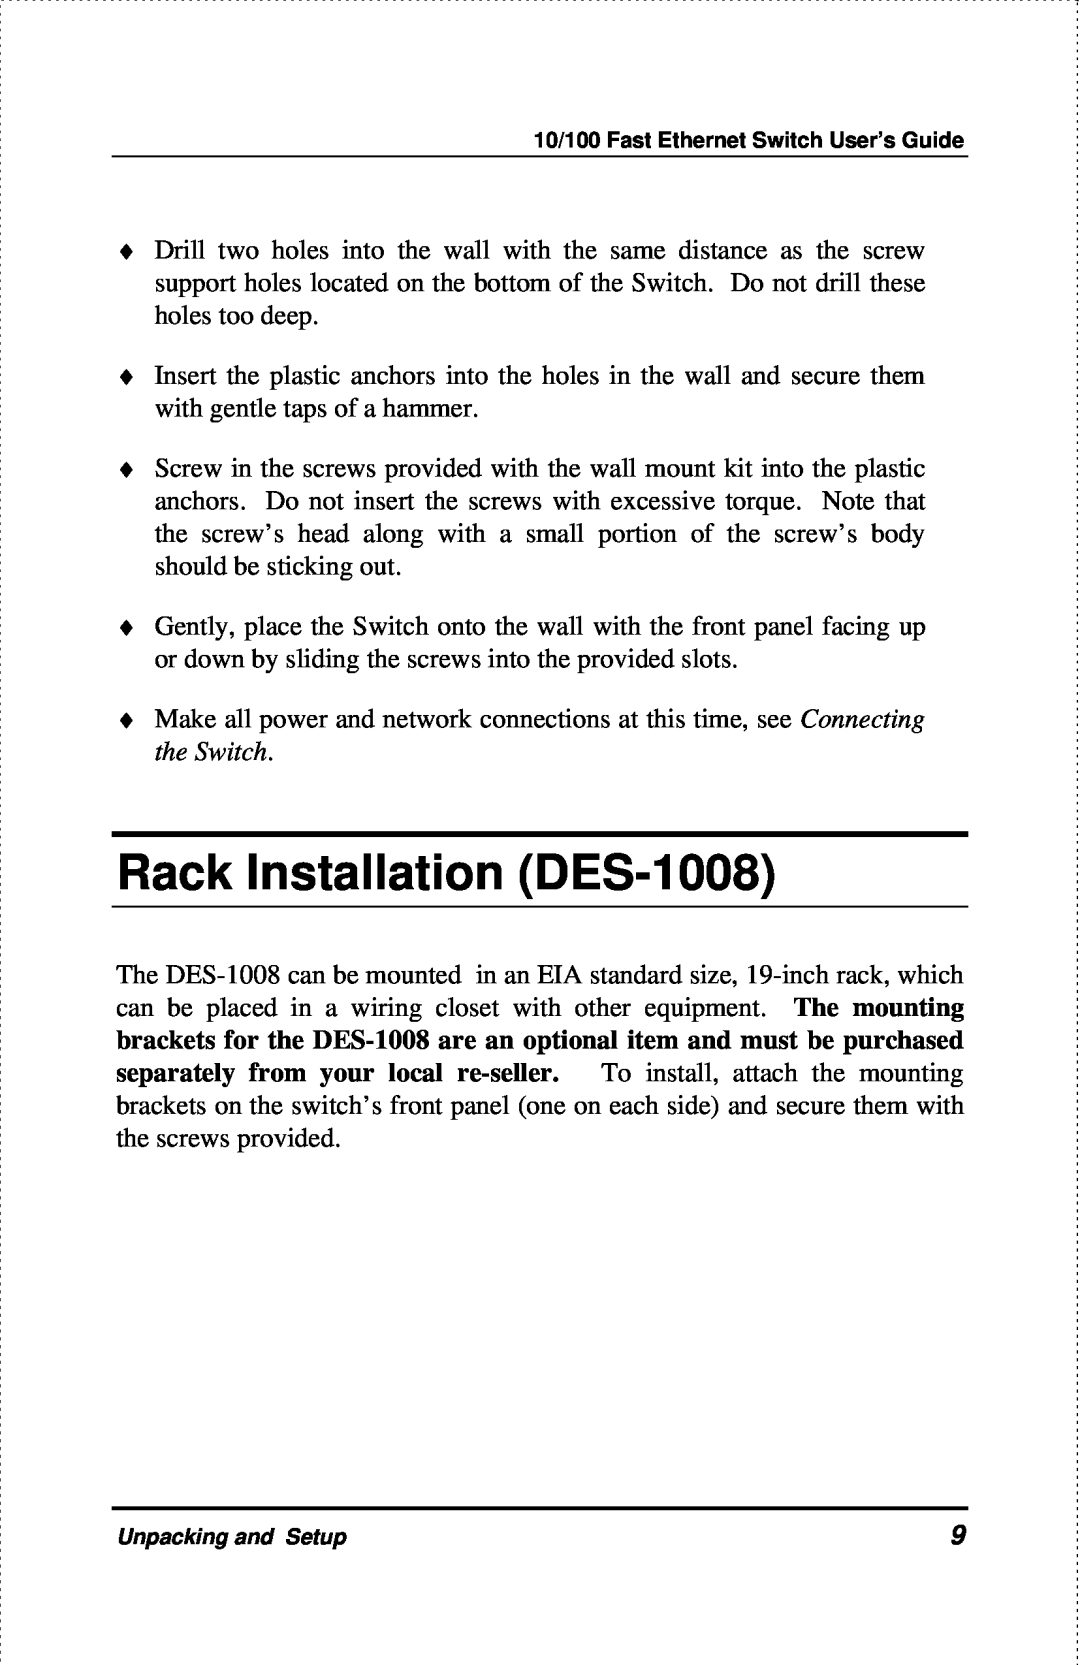 D-Link DES-1004 manual Rack Installation DES-1008 